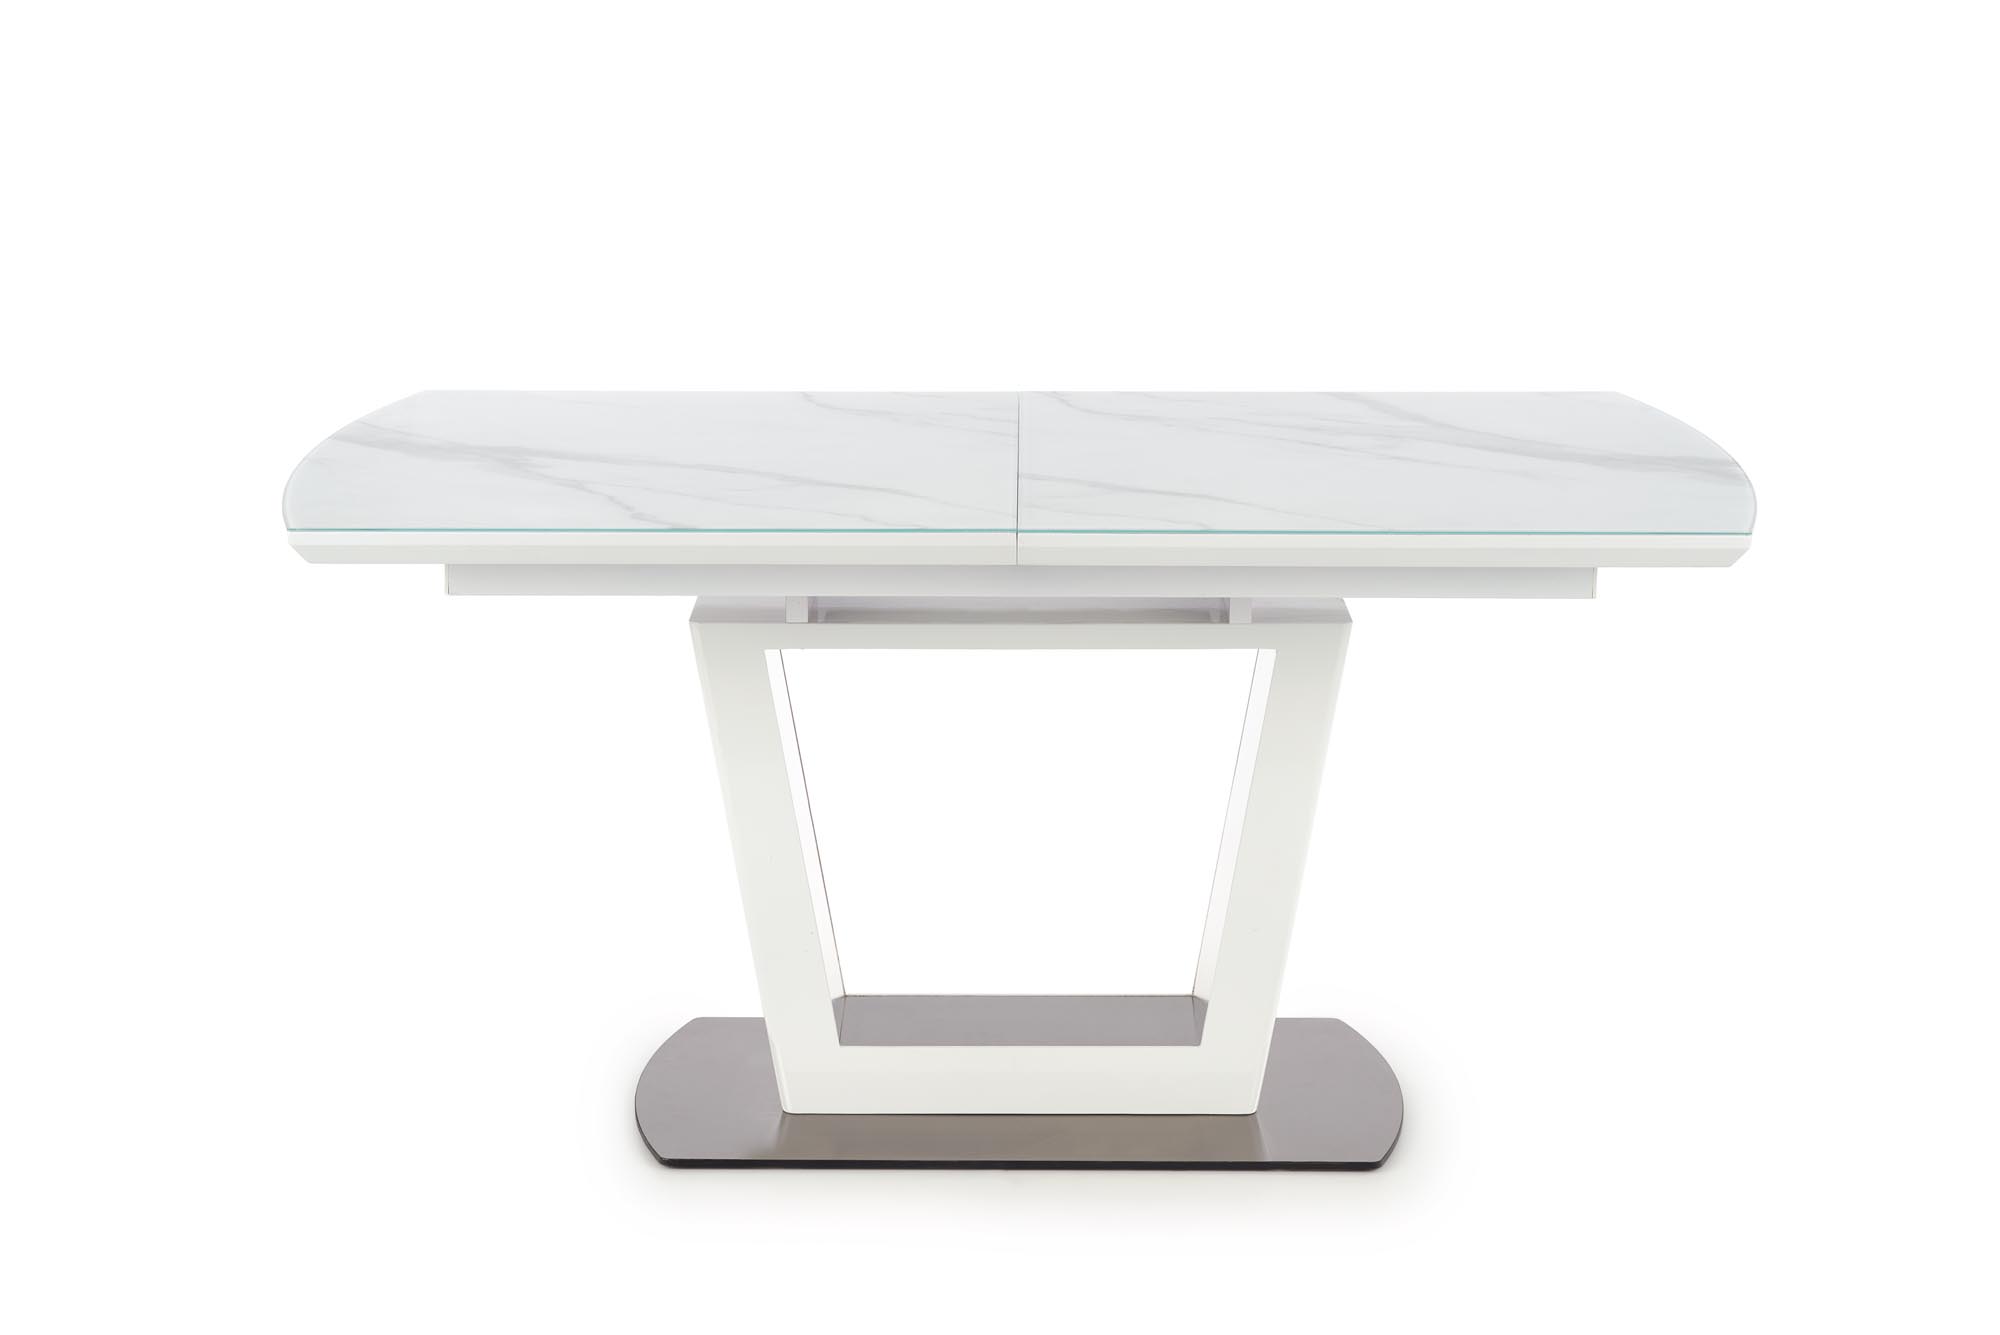 BLANCO asztal - asztallap - fehér márvány / fehér, láb - fehér blanco stůl rozkládací Deska - Bílý mramor / Bílý, noha - Bílý